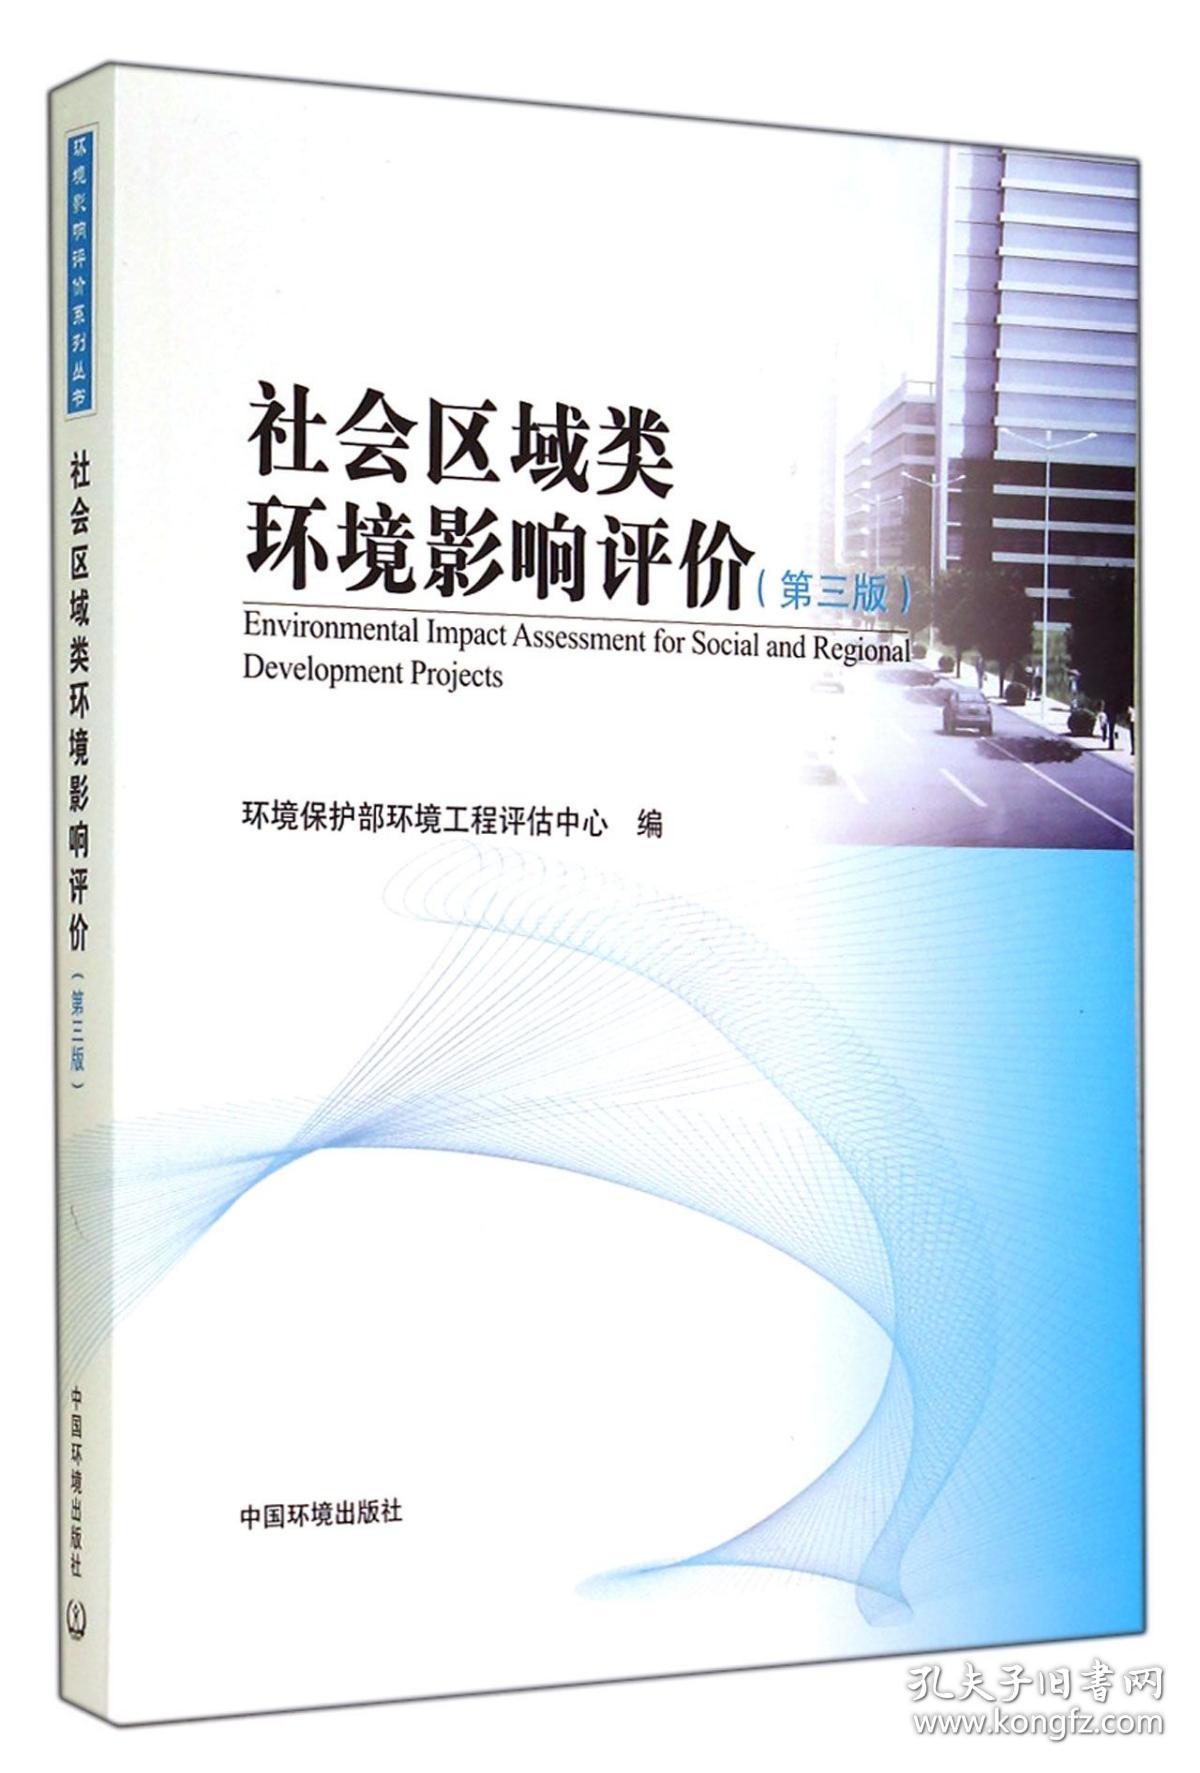 全新正版 社会区域类环境影响评价(第3版) 环境保护部环境工程评估中心 9787511116932 中国环境科学